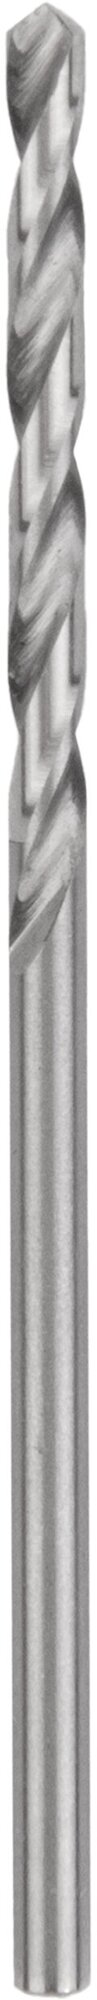 Сверло по металлу 13 мм NORGAU Industrial из быстрорежущей HSS стали